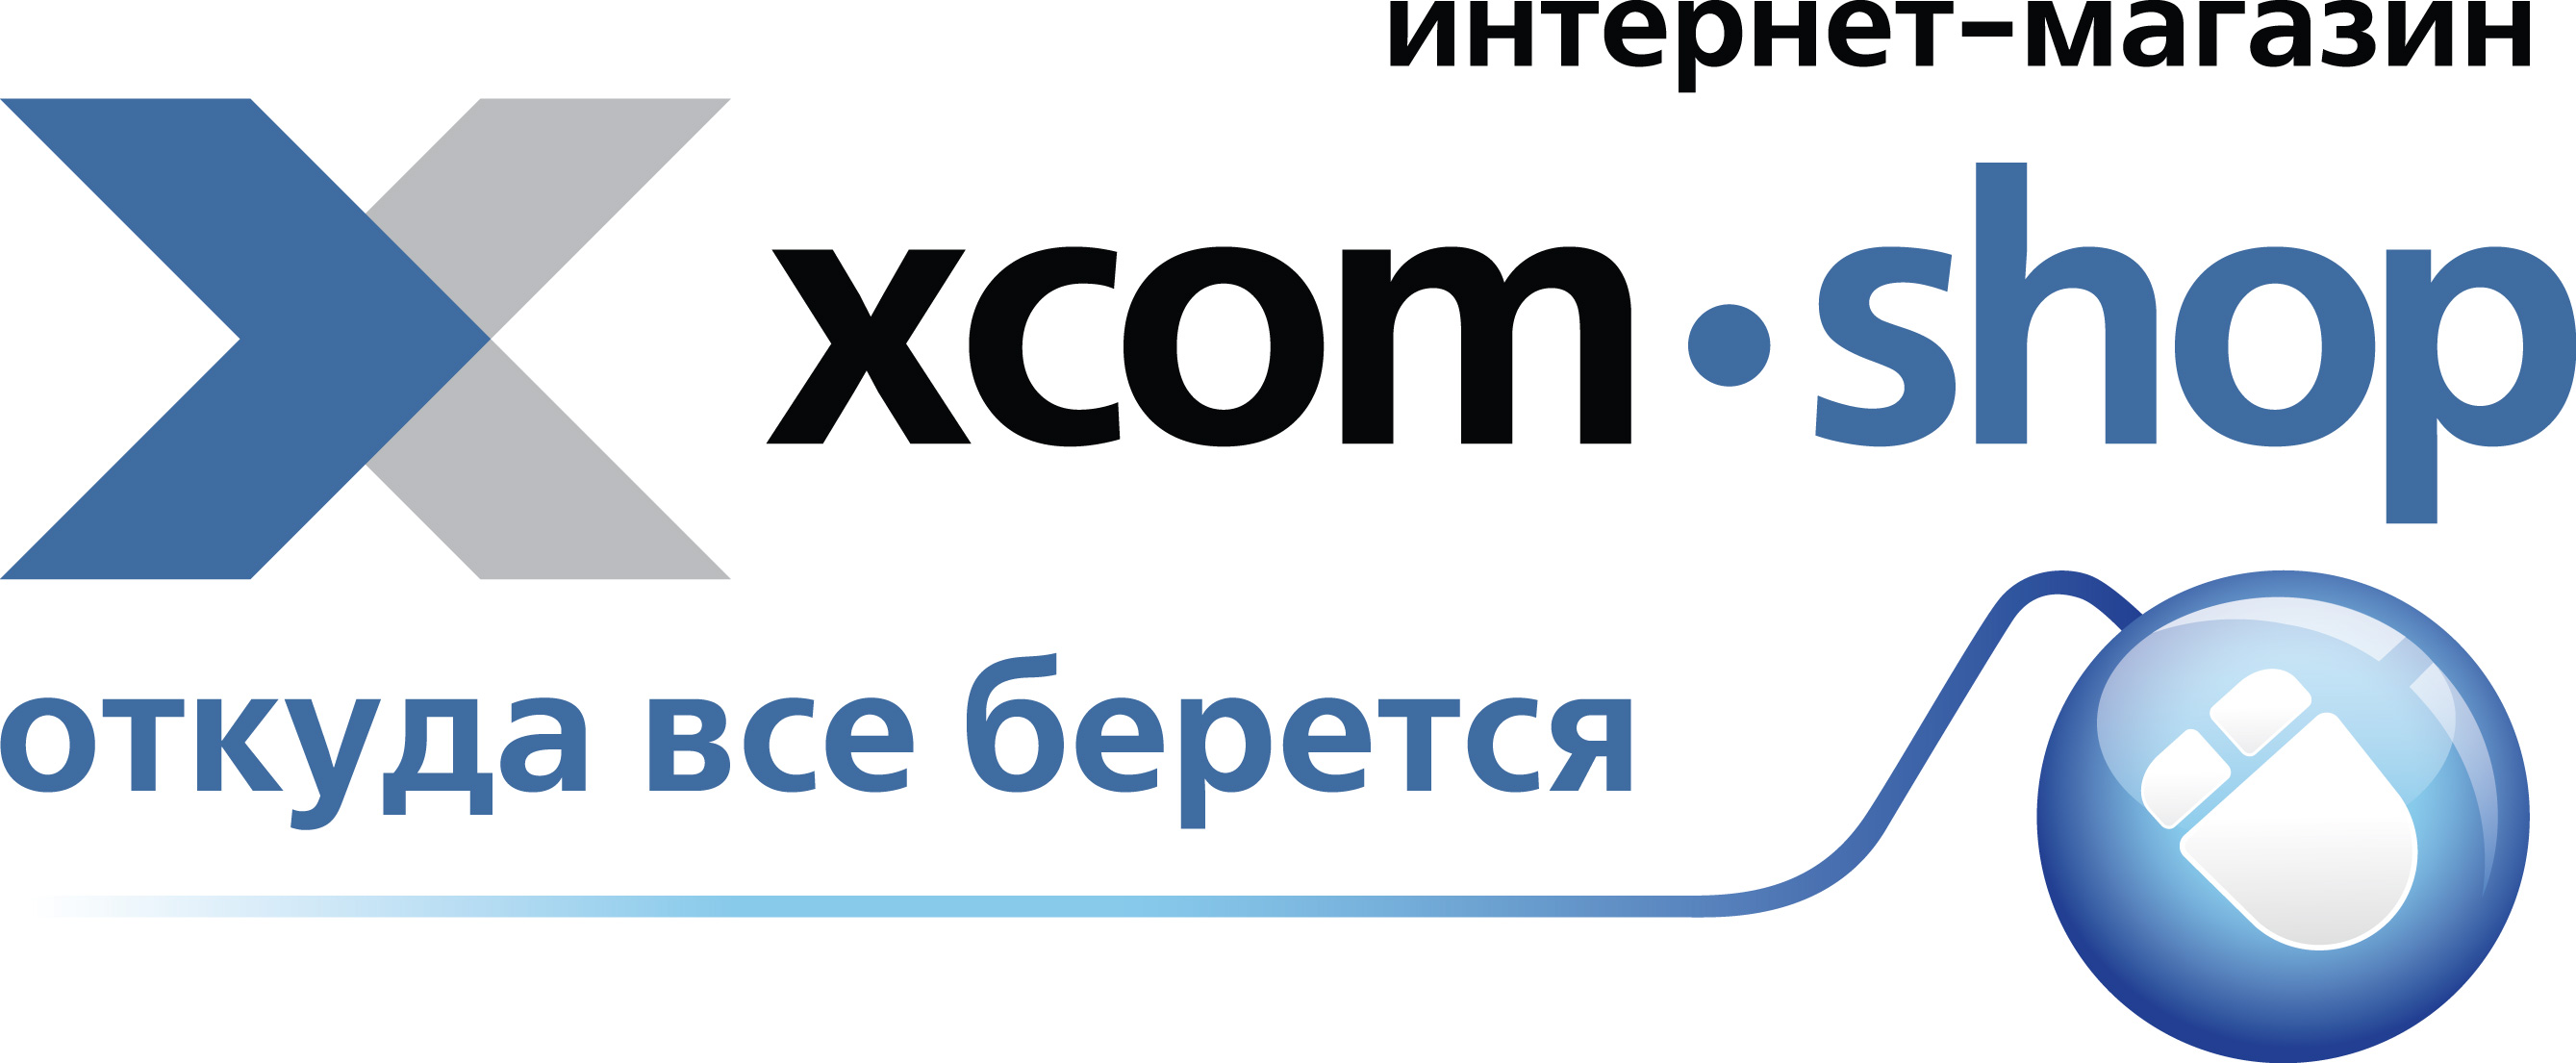 Магазин xcom shop. Интернет магазин. XCOM shop. XCOM-shop.ru интернет магазин. Логотип интернет магазина.